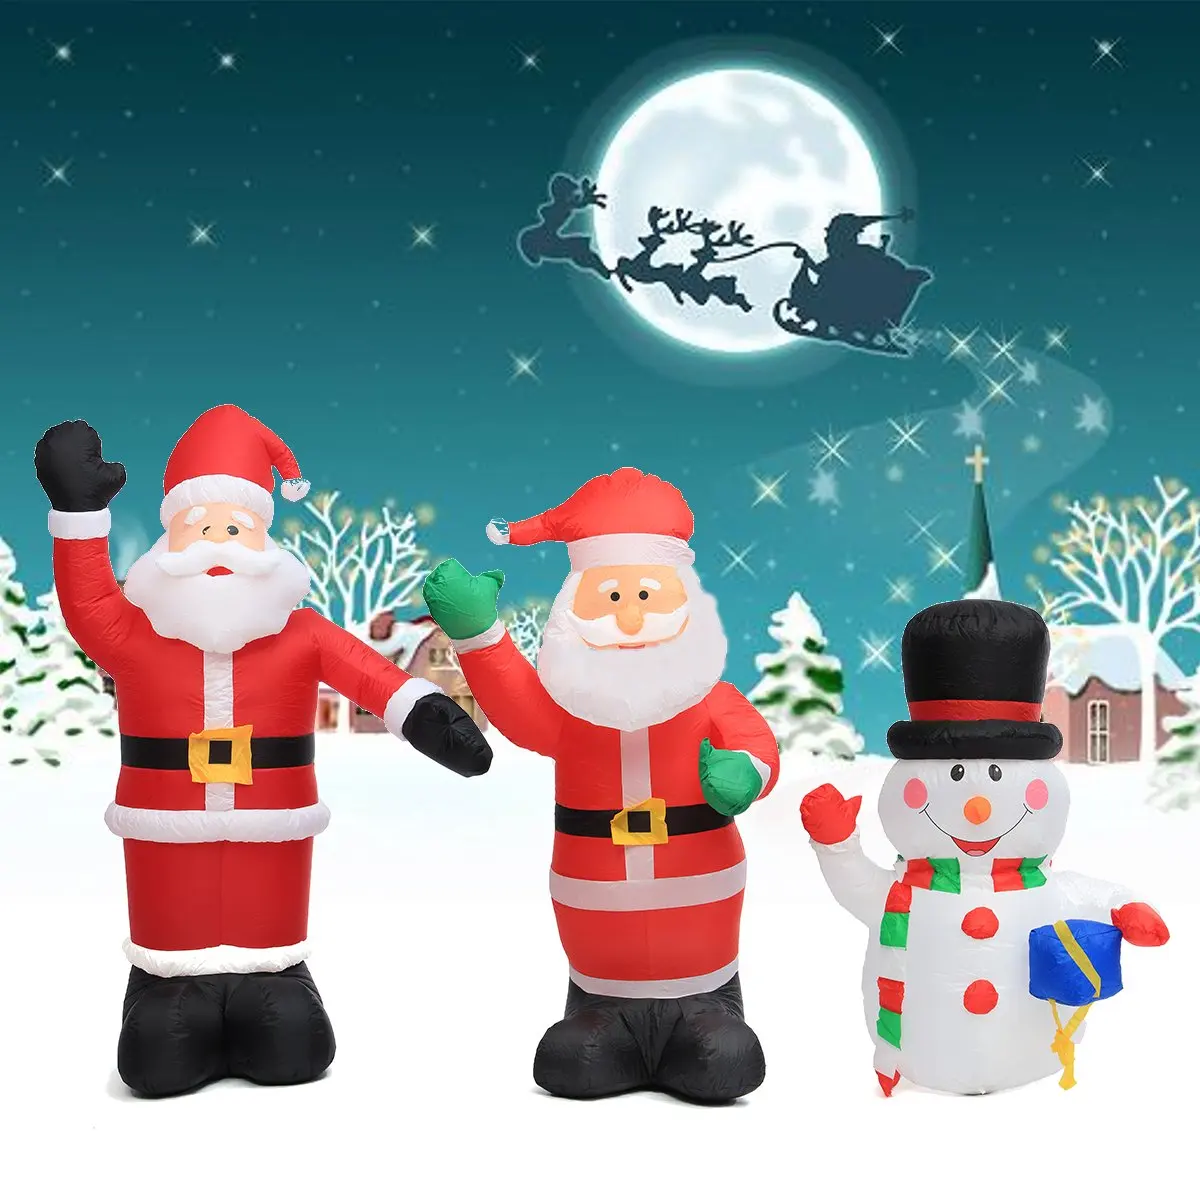 120 см/180 см/240 см воздушный надувной Санта-Клаус Снеговик наружная воздушная Рождественская декоративная фигура дети классические детские игрушки